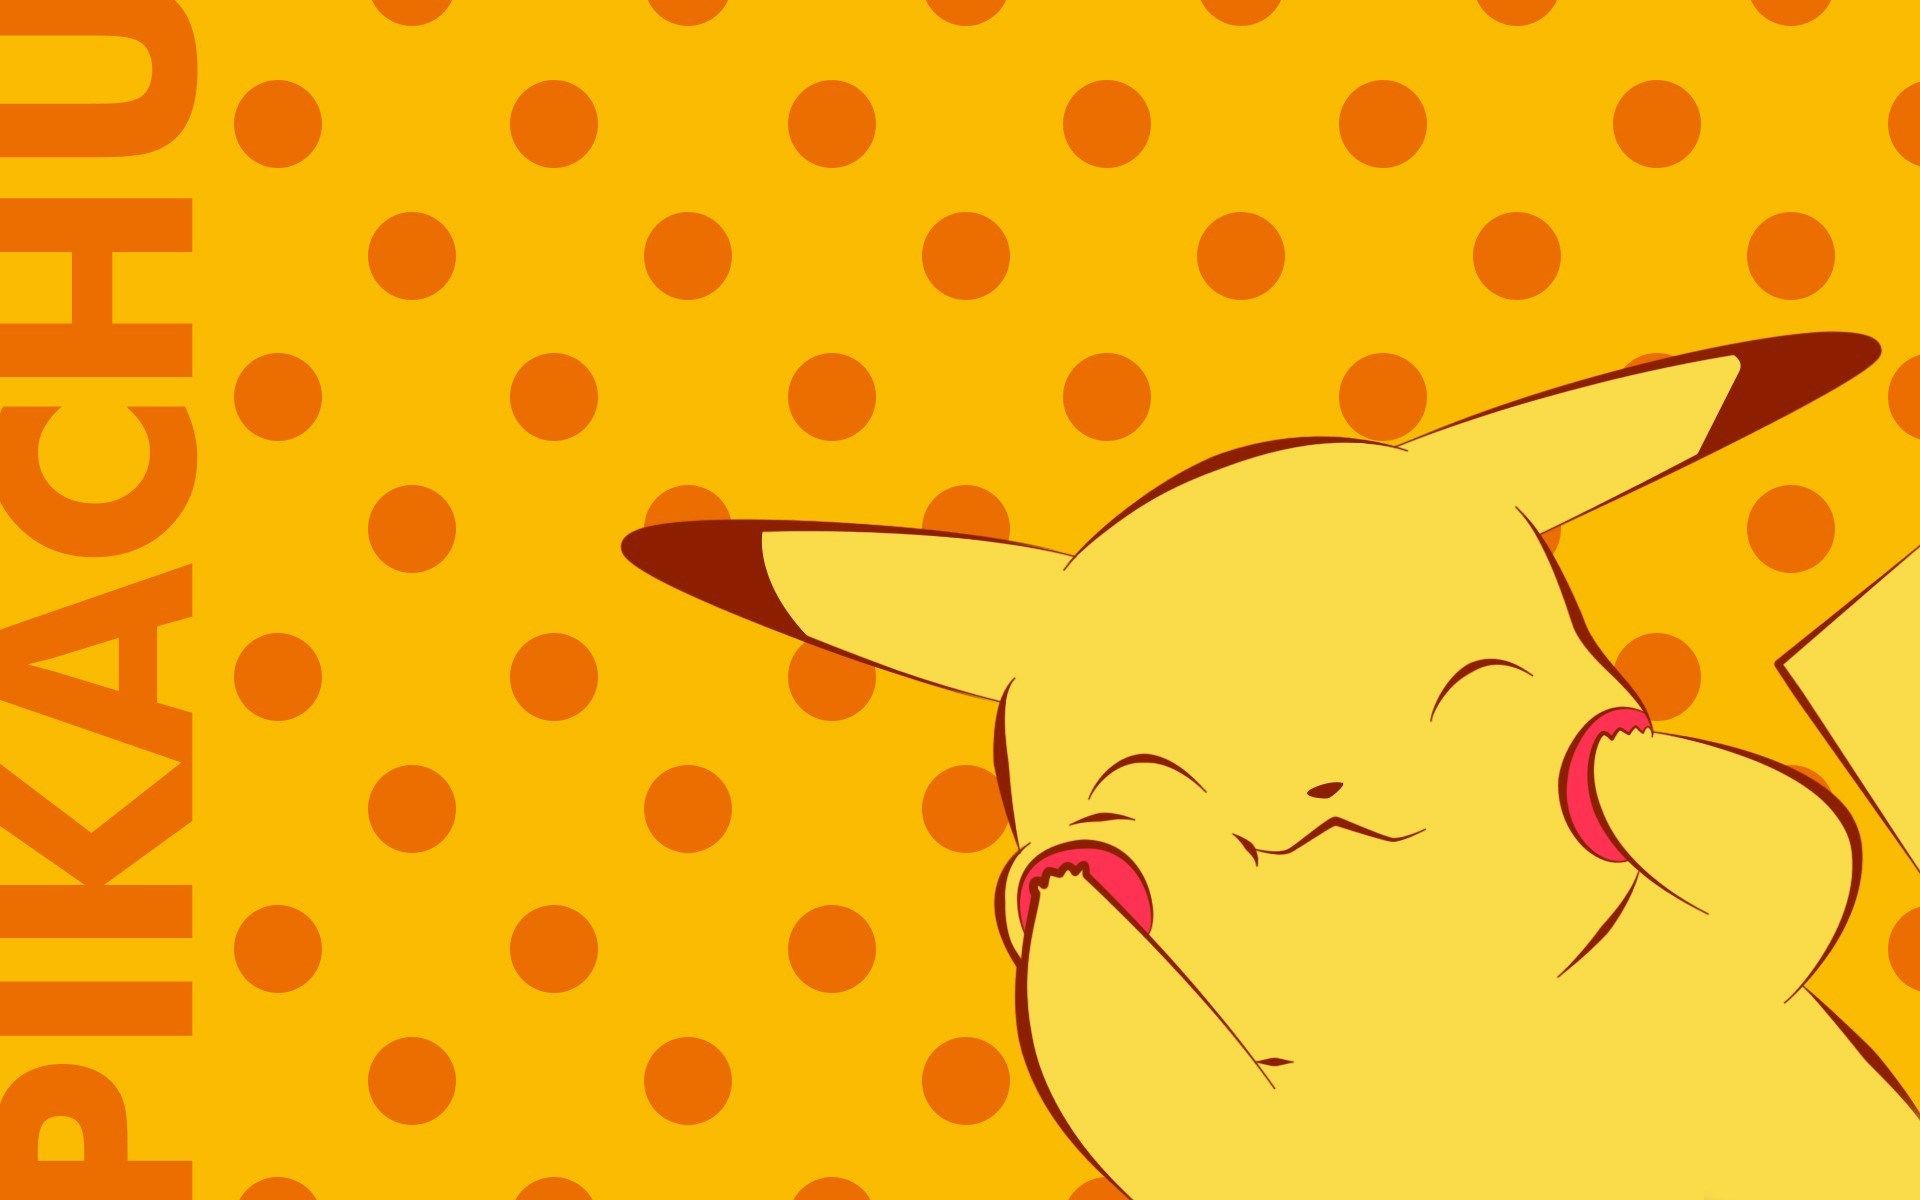 pokemon wallpaper for mac desktop. Pikachu wallpaper, Pikachu, Cute pokemon wallpaper